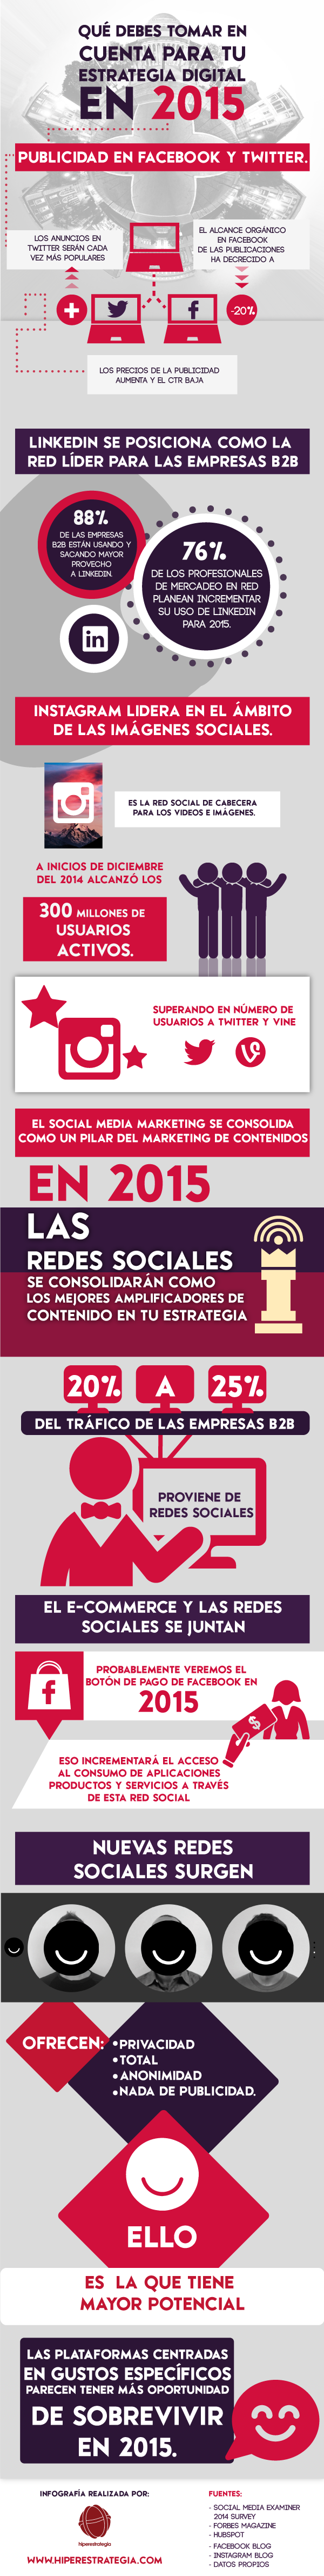 infografia_redes_sociales_y_estrategia_digital_2015